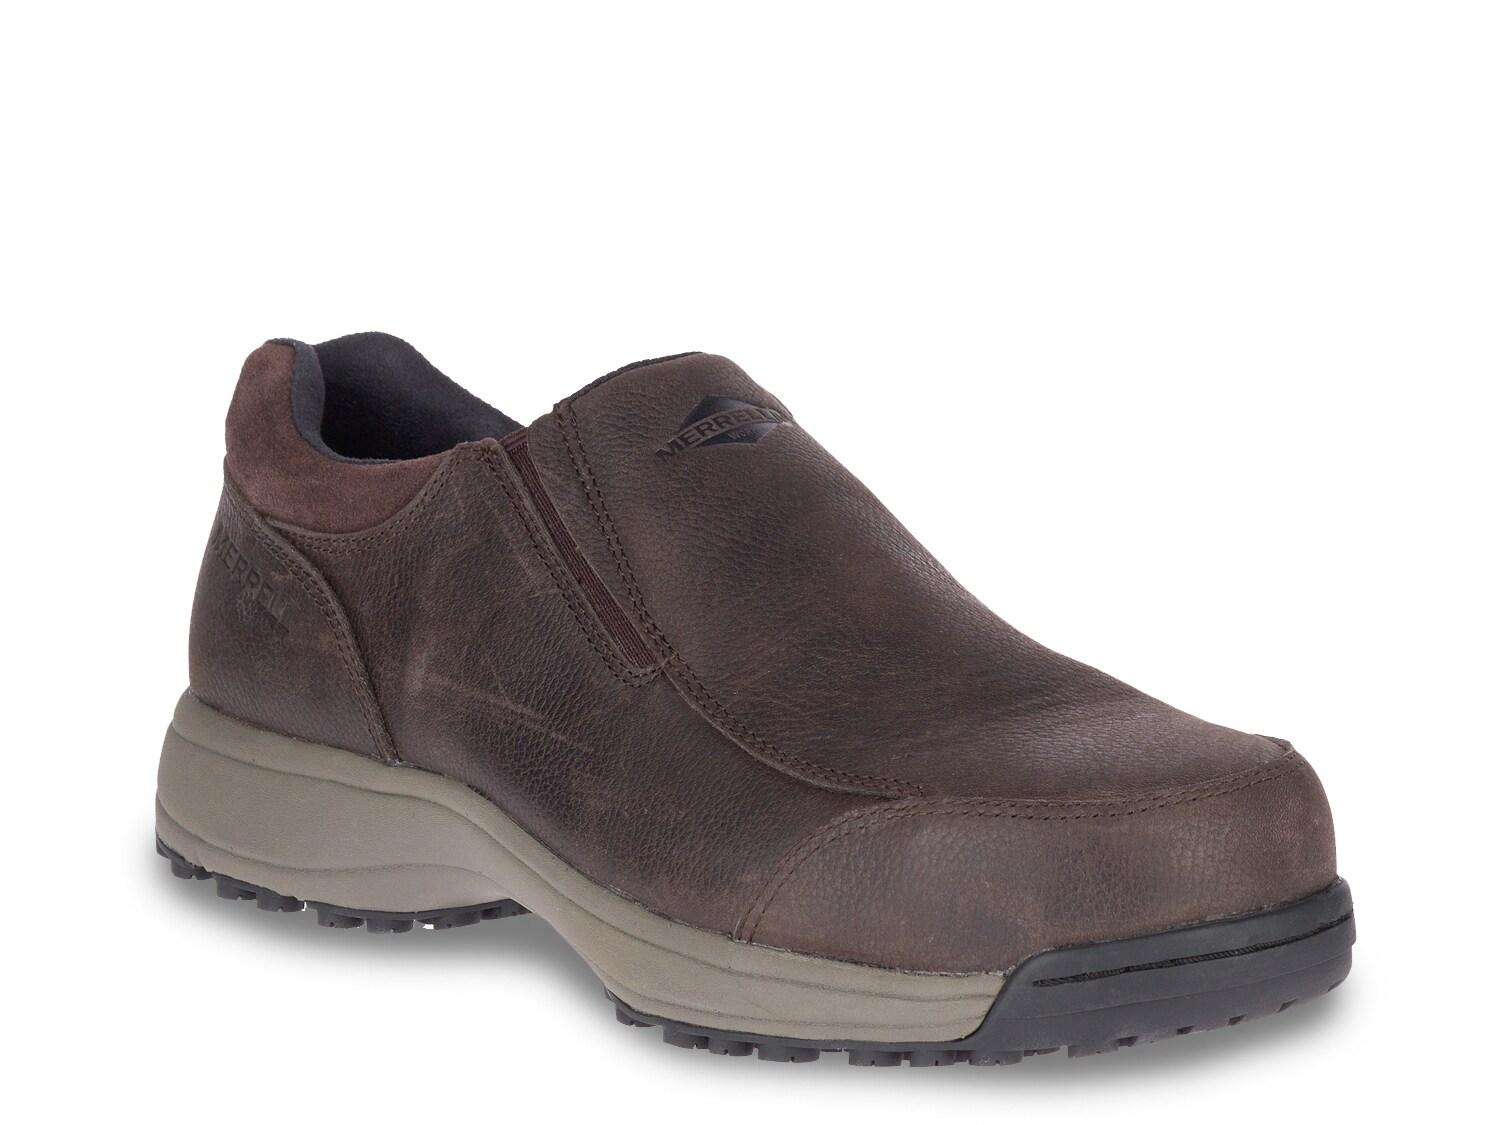 merrell slip on lightweight comfort sneakers